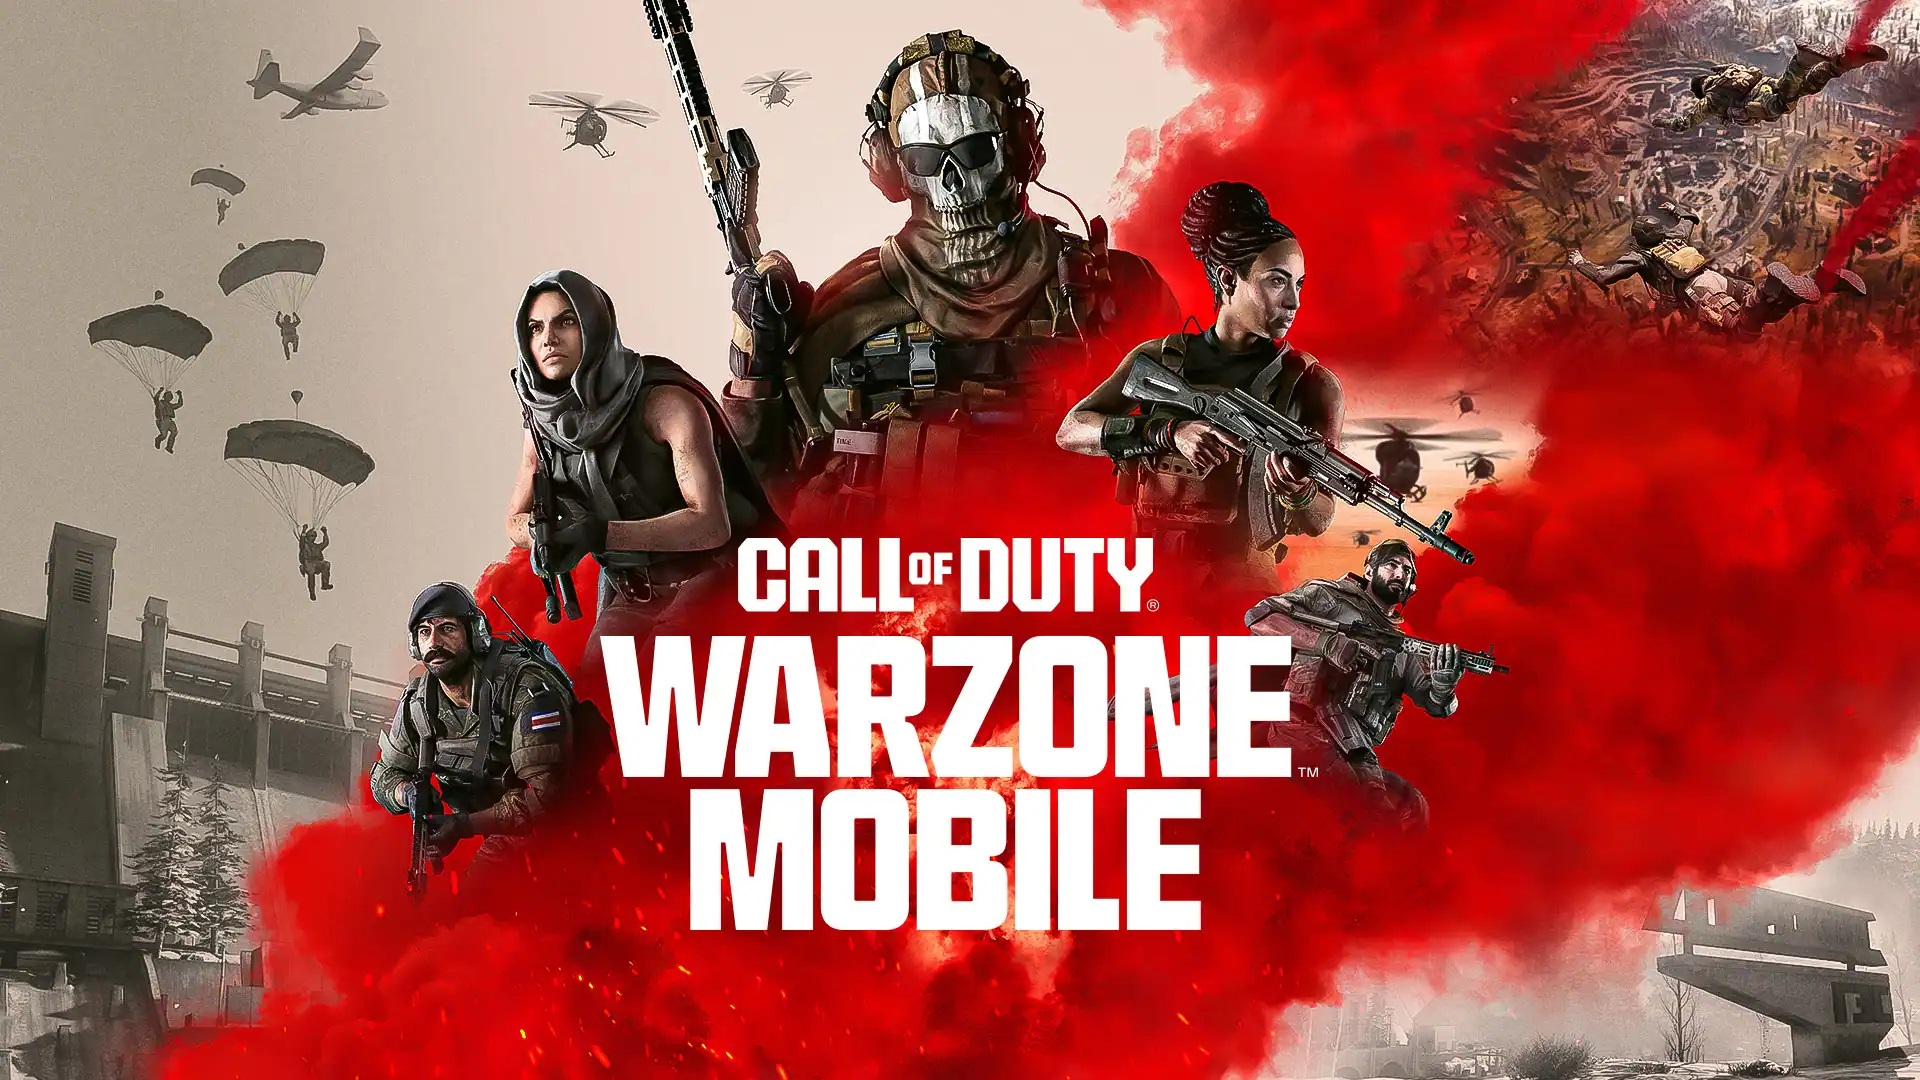 Il lancio ufficiale di Call of Duty: Warzone Mobile ha avuto luogo